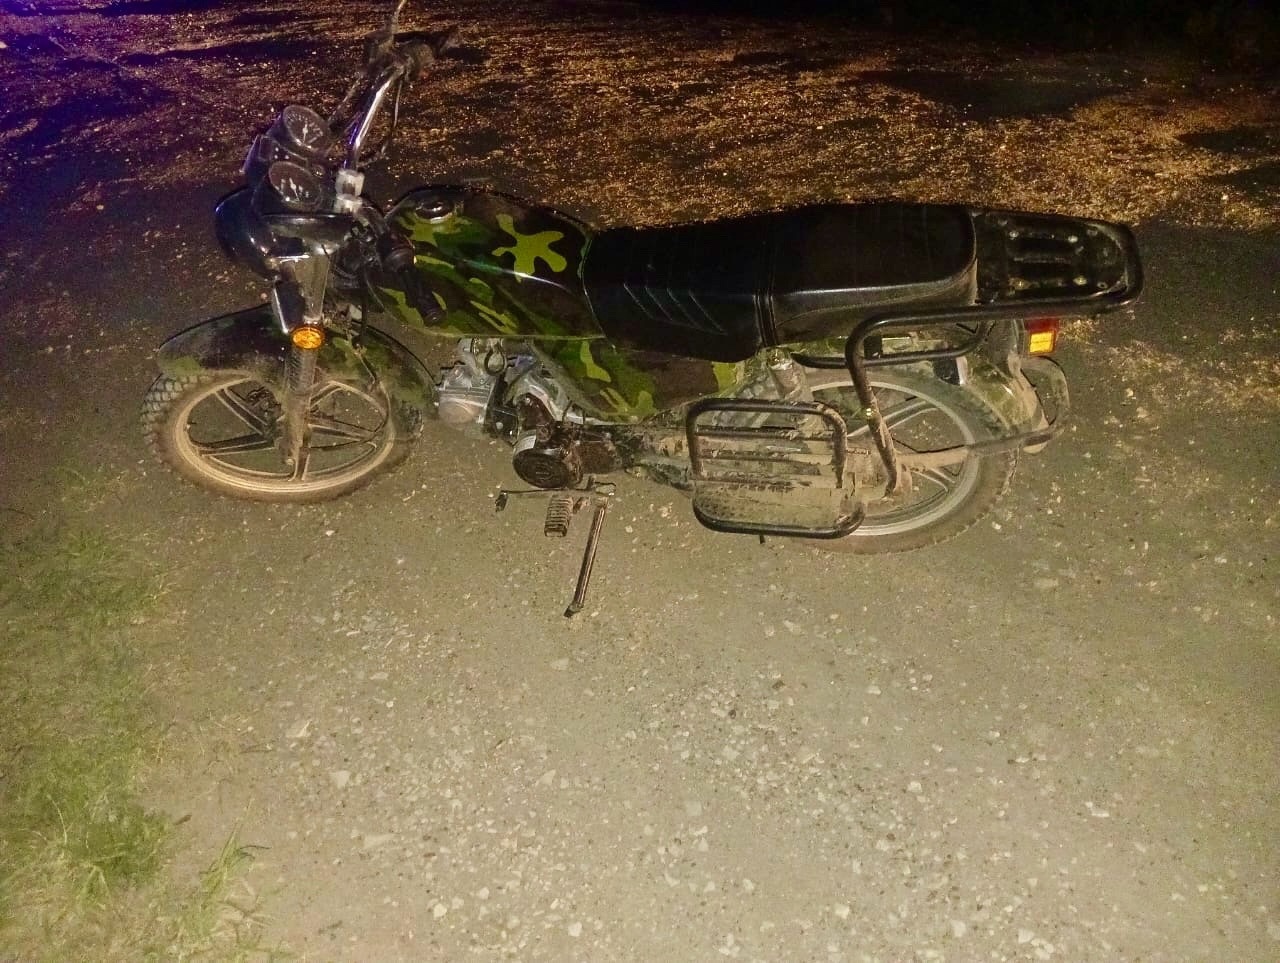 16-летний водитель мопеда погиб на месте в результате аварии на трассе в Вятских Полянах